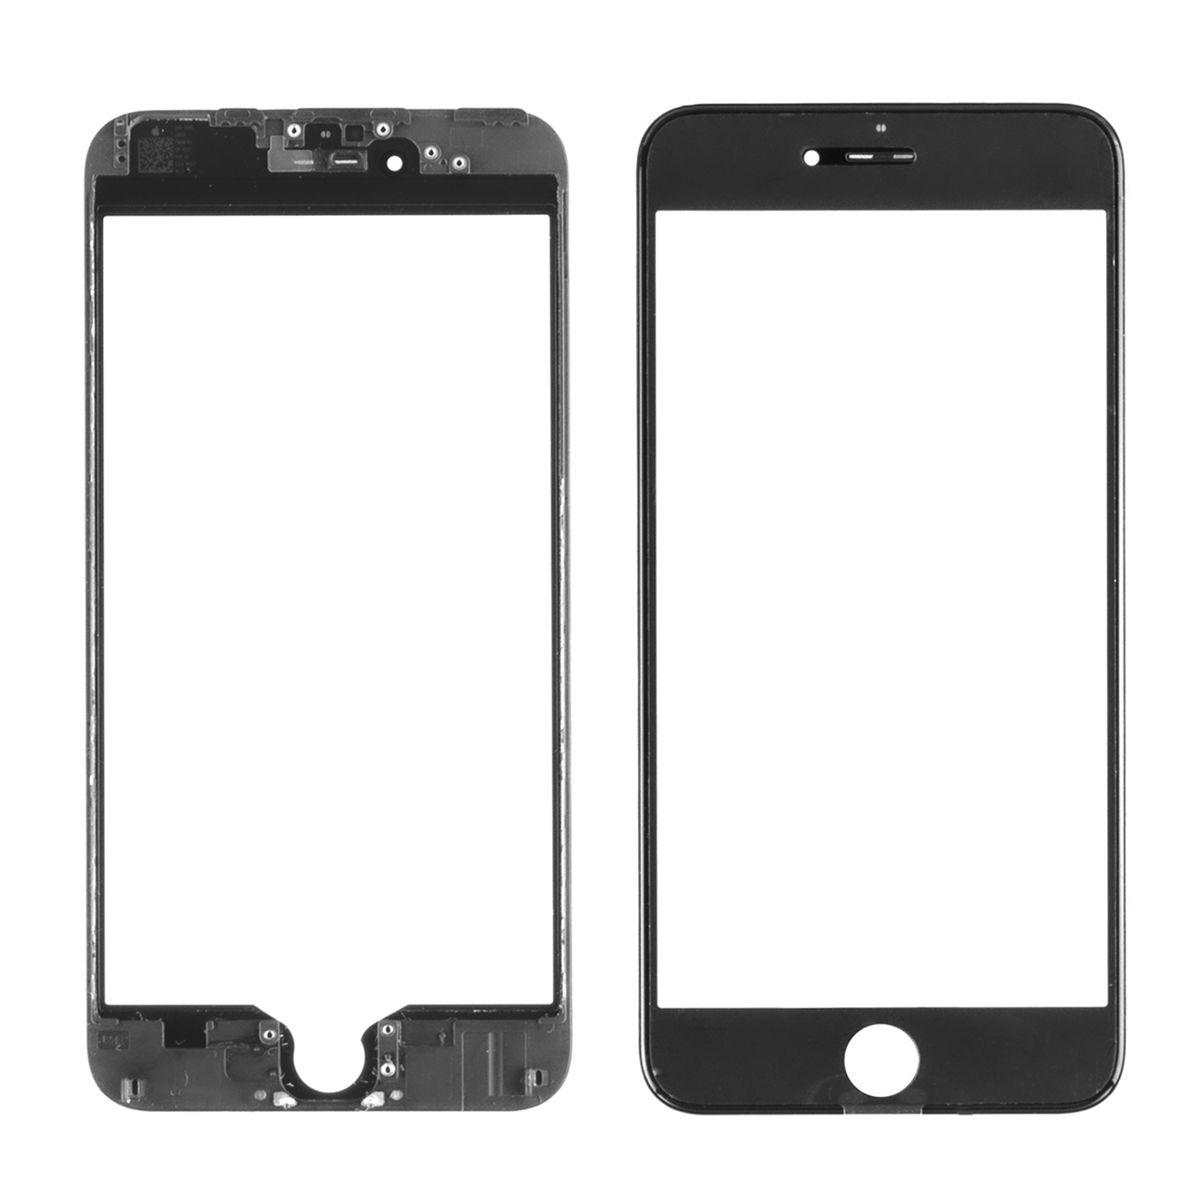 Стекло дисплей для iPhone 6G Plus (3 в 1) с рамкой и OCA пленкой, Black